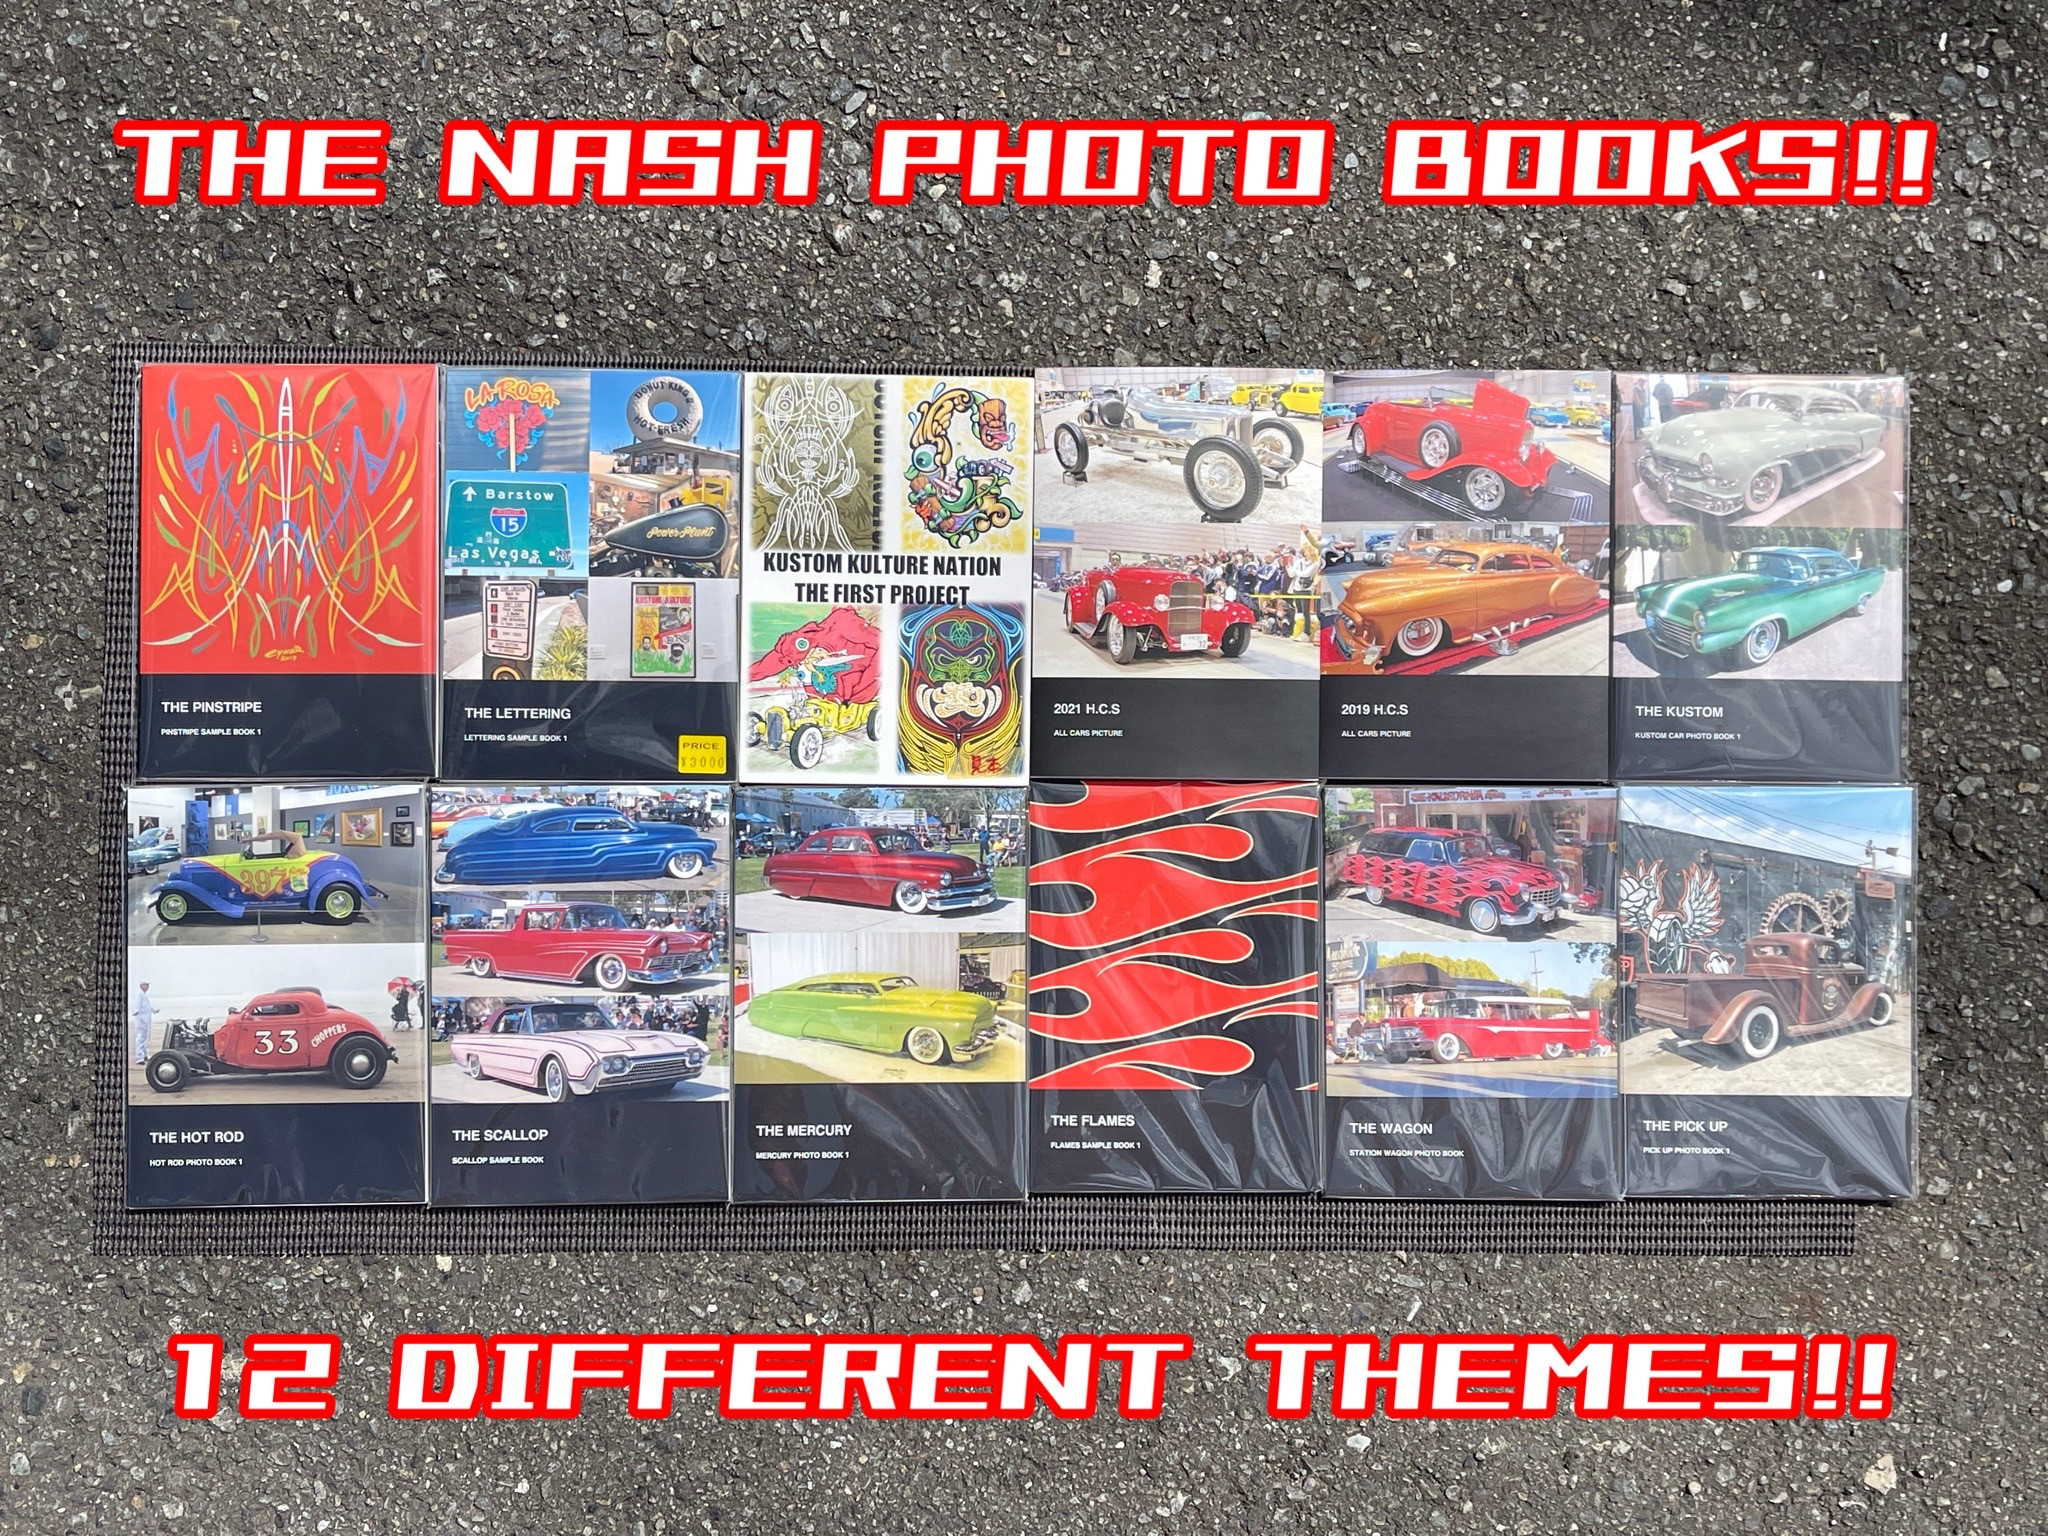 THE NASH. ORIGINAL PHOTO BOOK